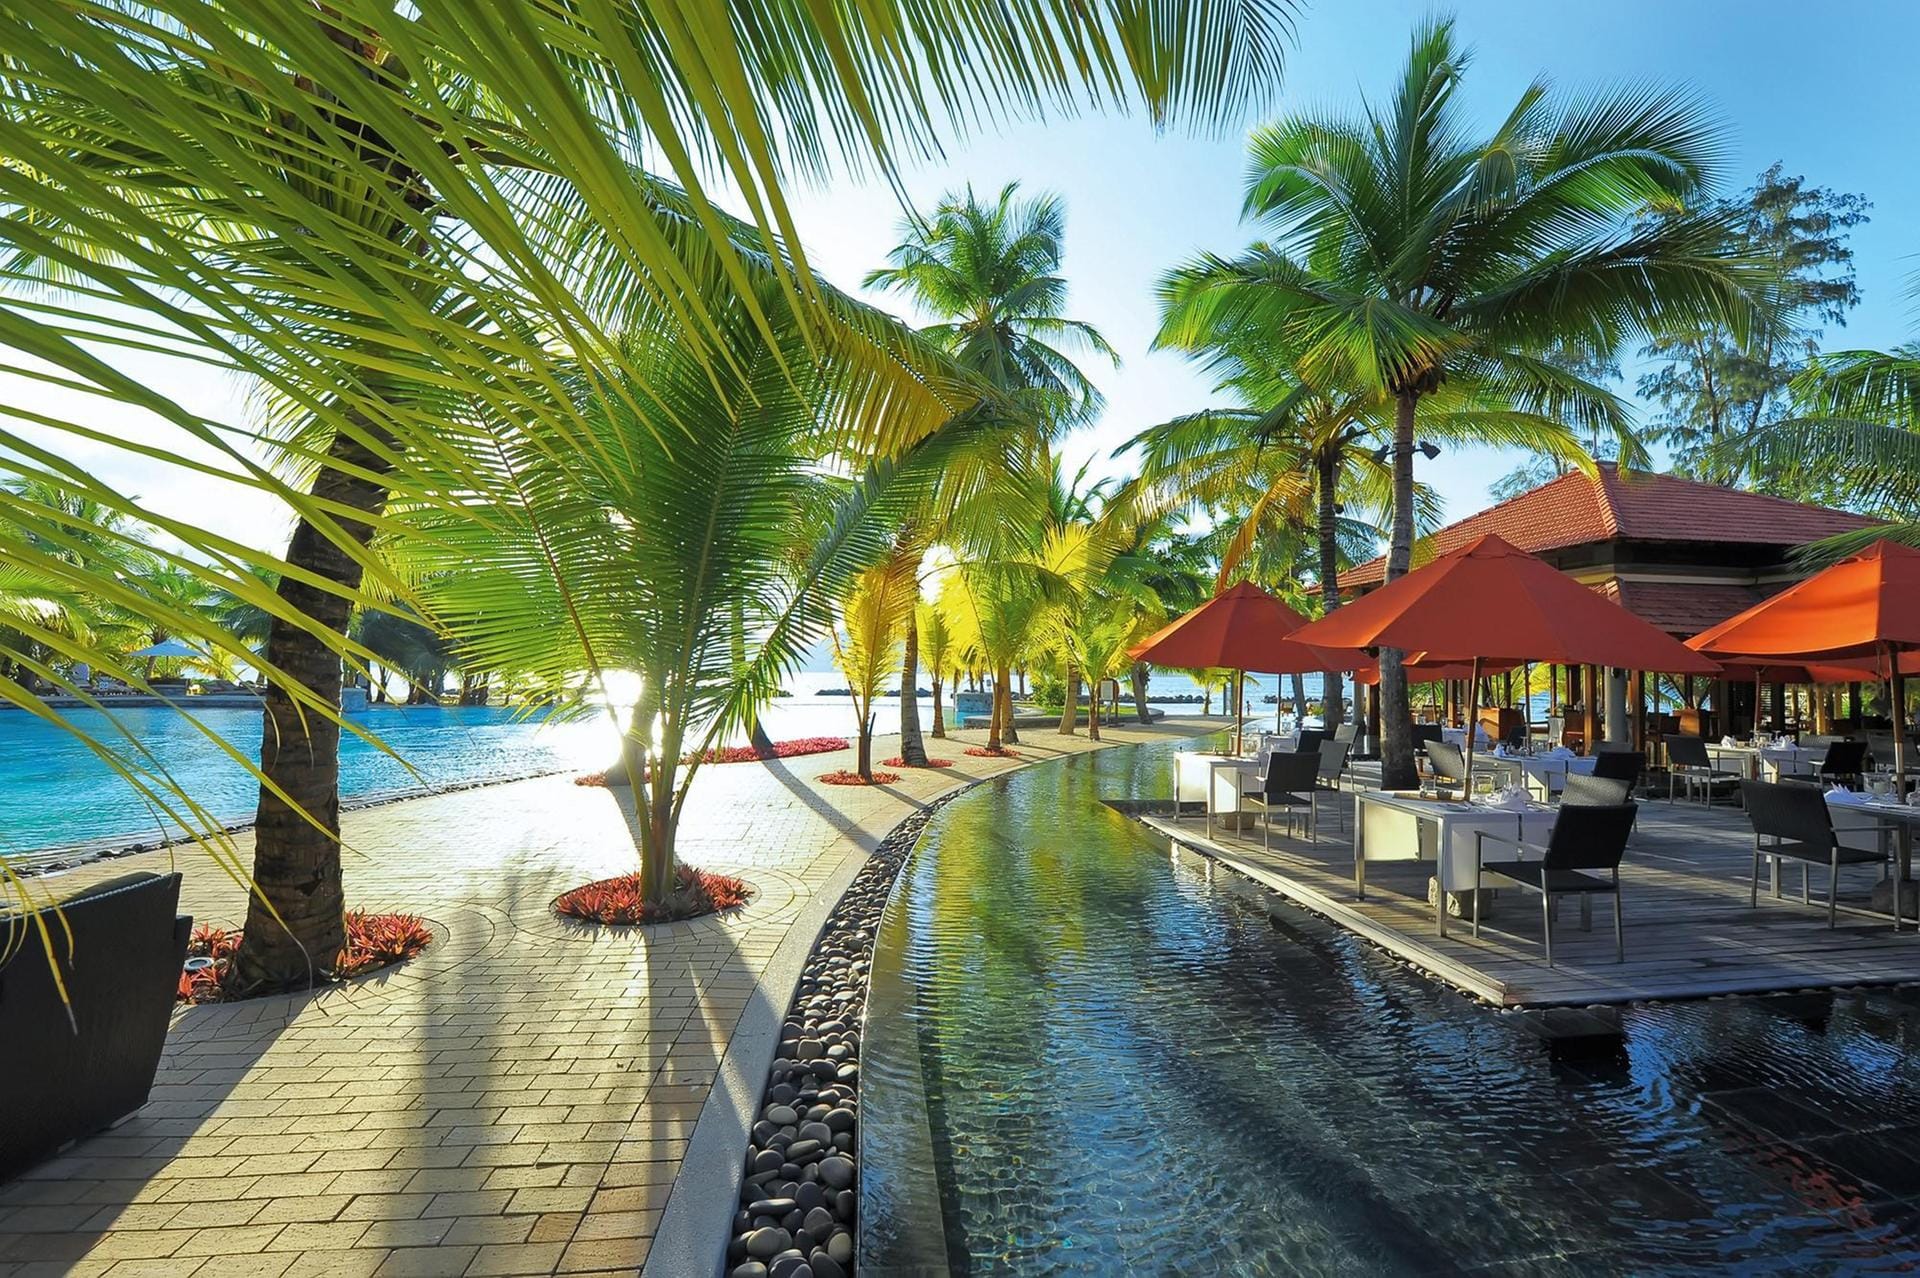 Poolanlage im neuen Club Med Sainte Anne. Ab Ende 2019 bietet der Club die komplette Ferieninsel auf den Seychellen an.